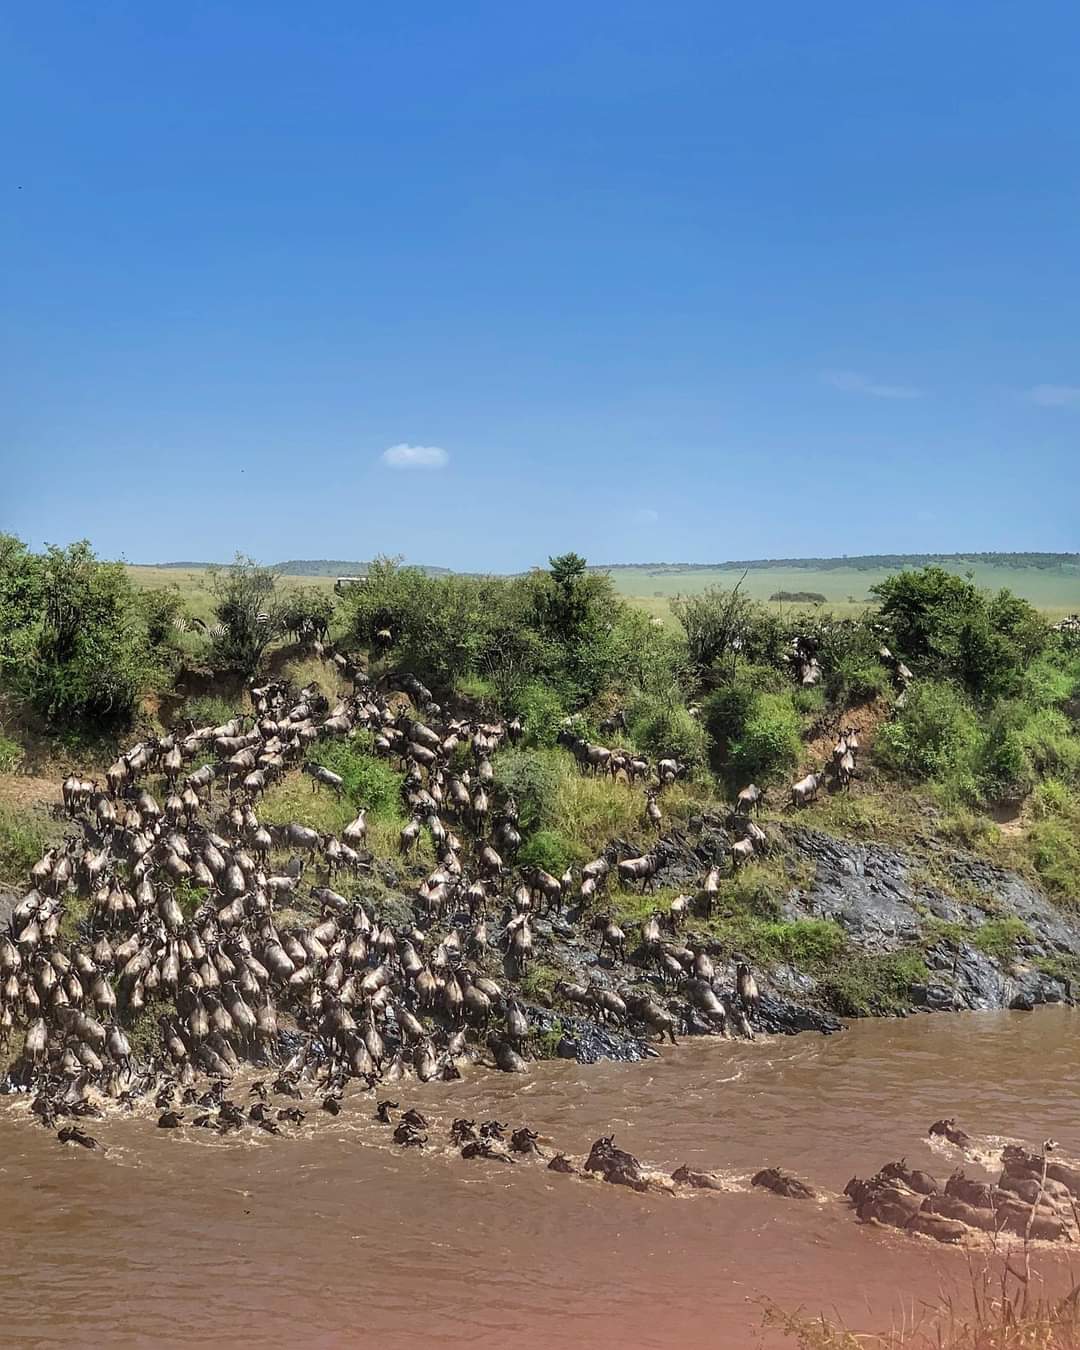 Wildebeest Migration in Kenya - Wildebeest Sightings Week 4 July 2022